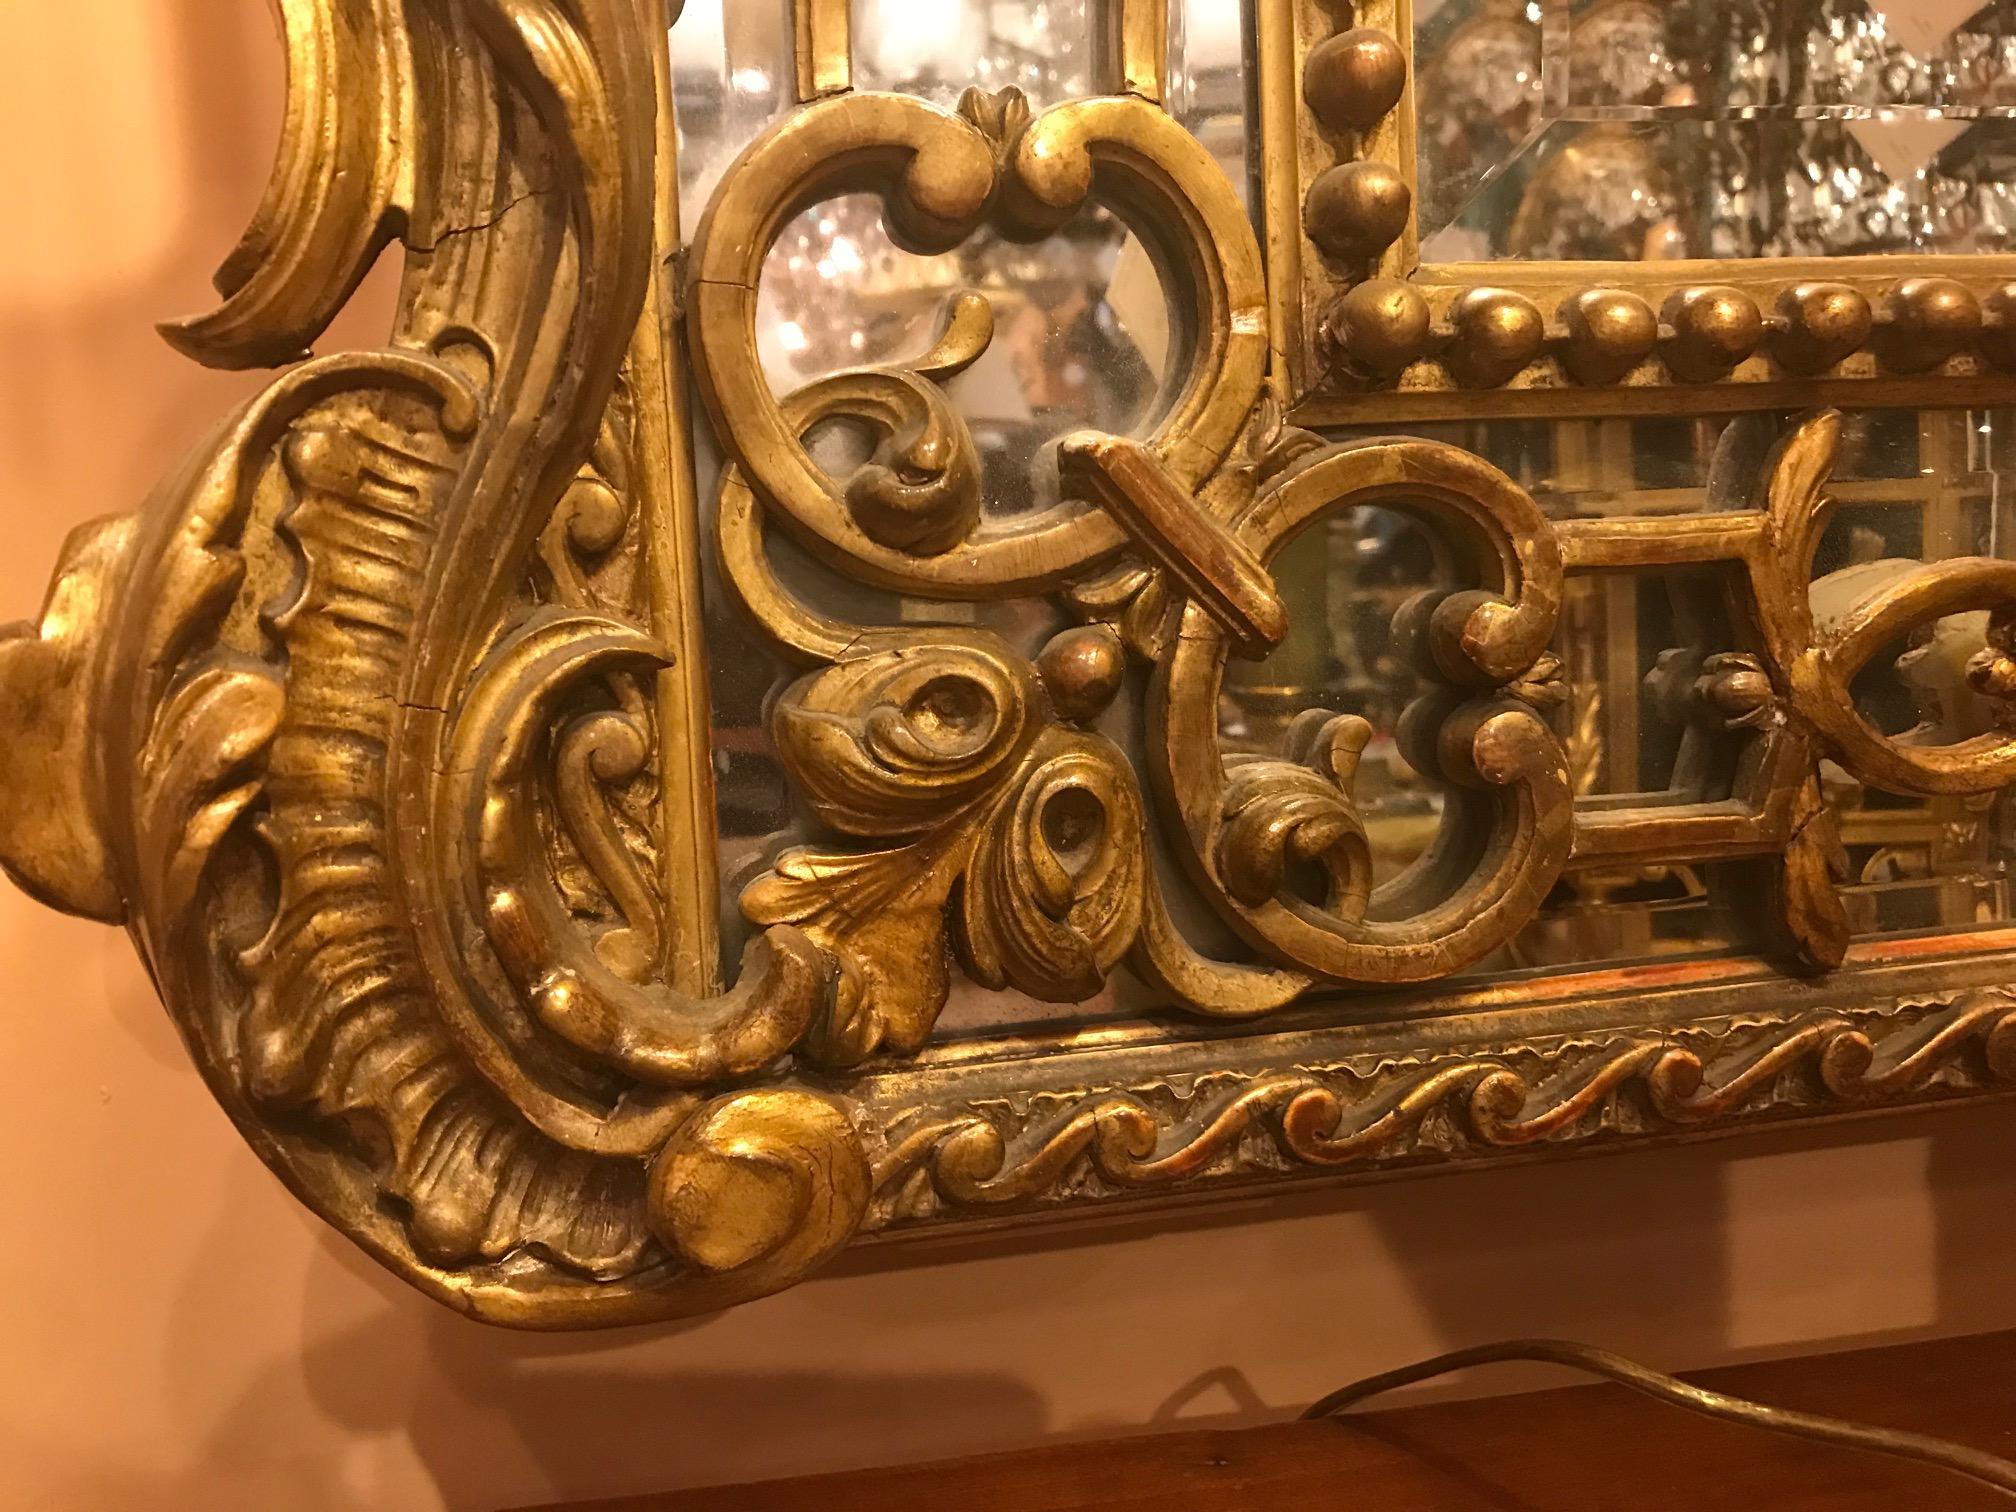 Dieser sehr dekorative große Spiegel hat einen geschnitzten zentralen Wappengiebel, der von Greifen flankiert wird. Die offenen verspiegelten Seitenteile in Kombination mit der großen zentralen Formplatte sorgen für viel reflektierendes Licht. Die